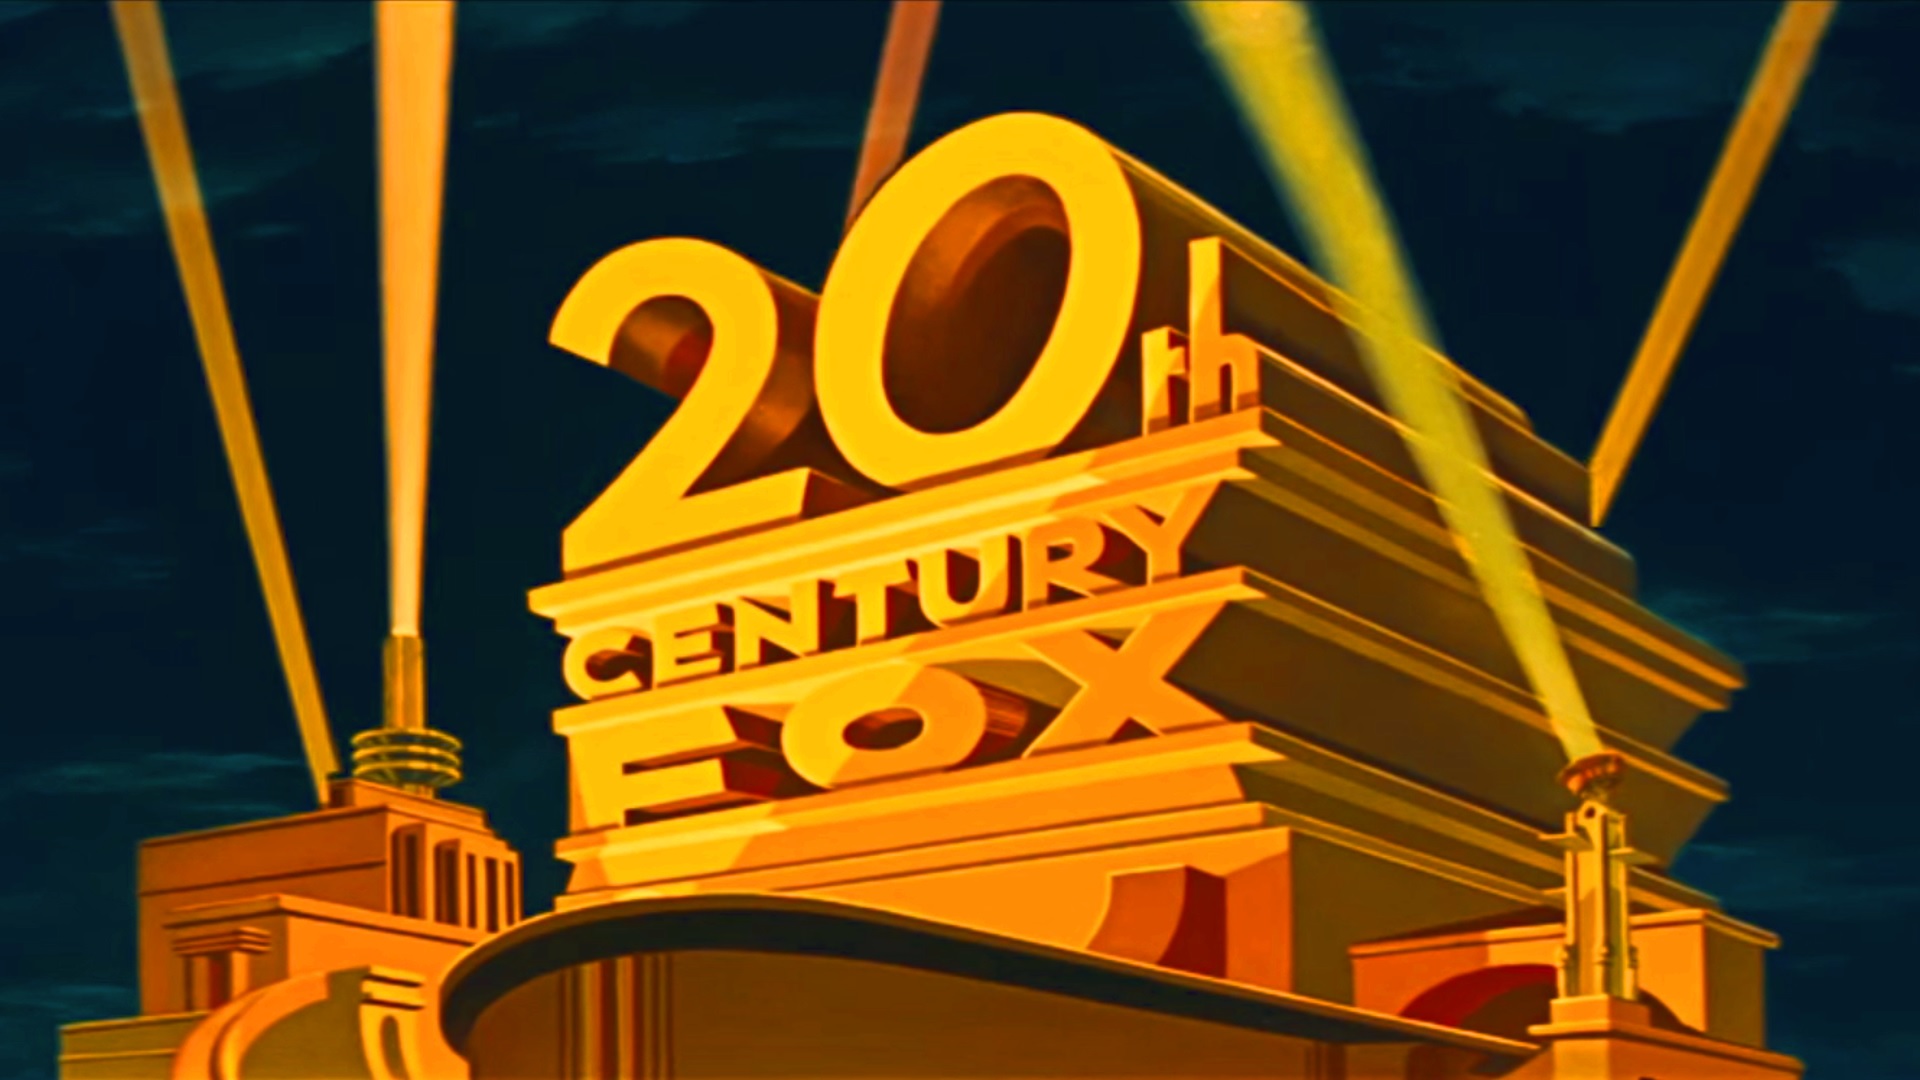 20th Century Fox Logo Variations list